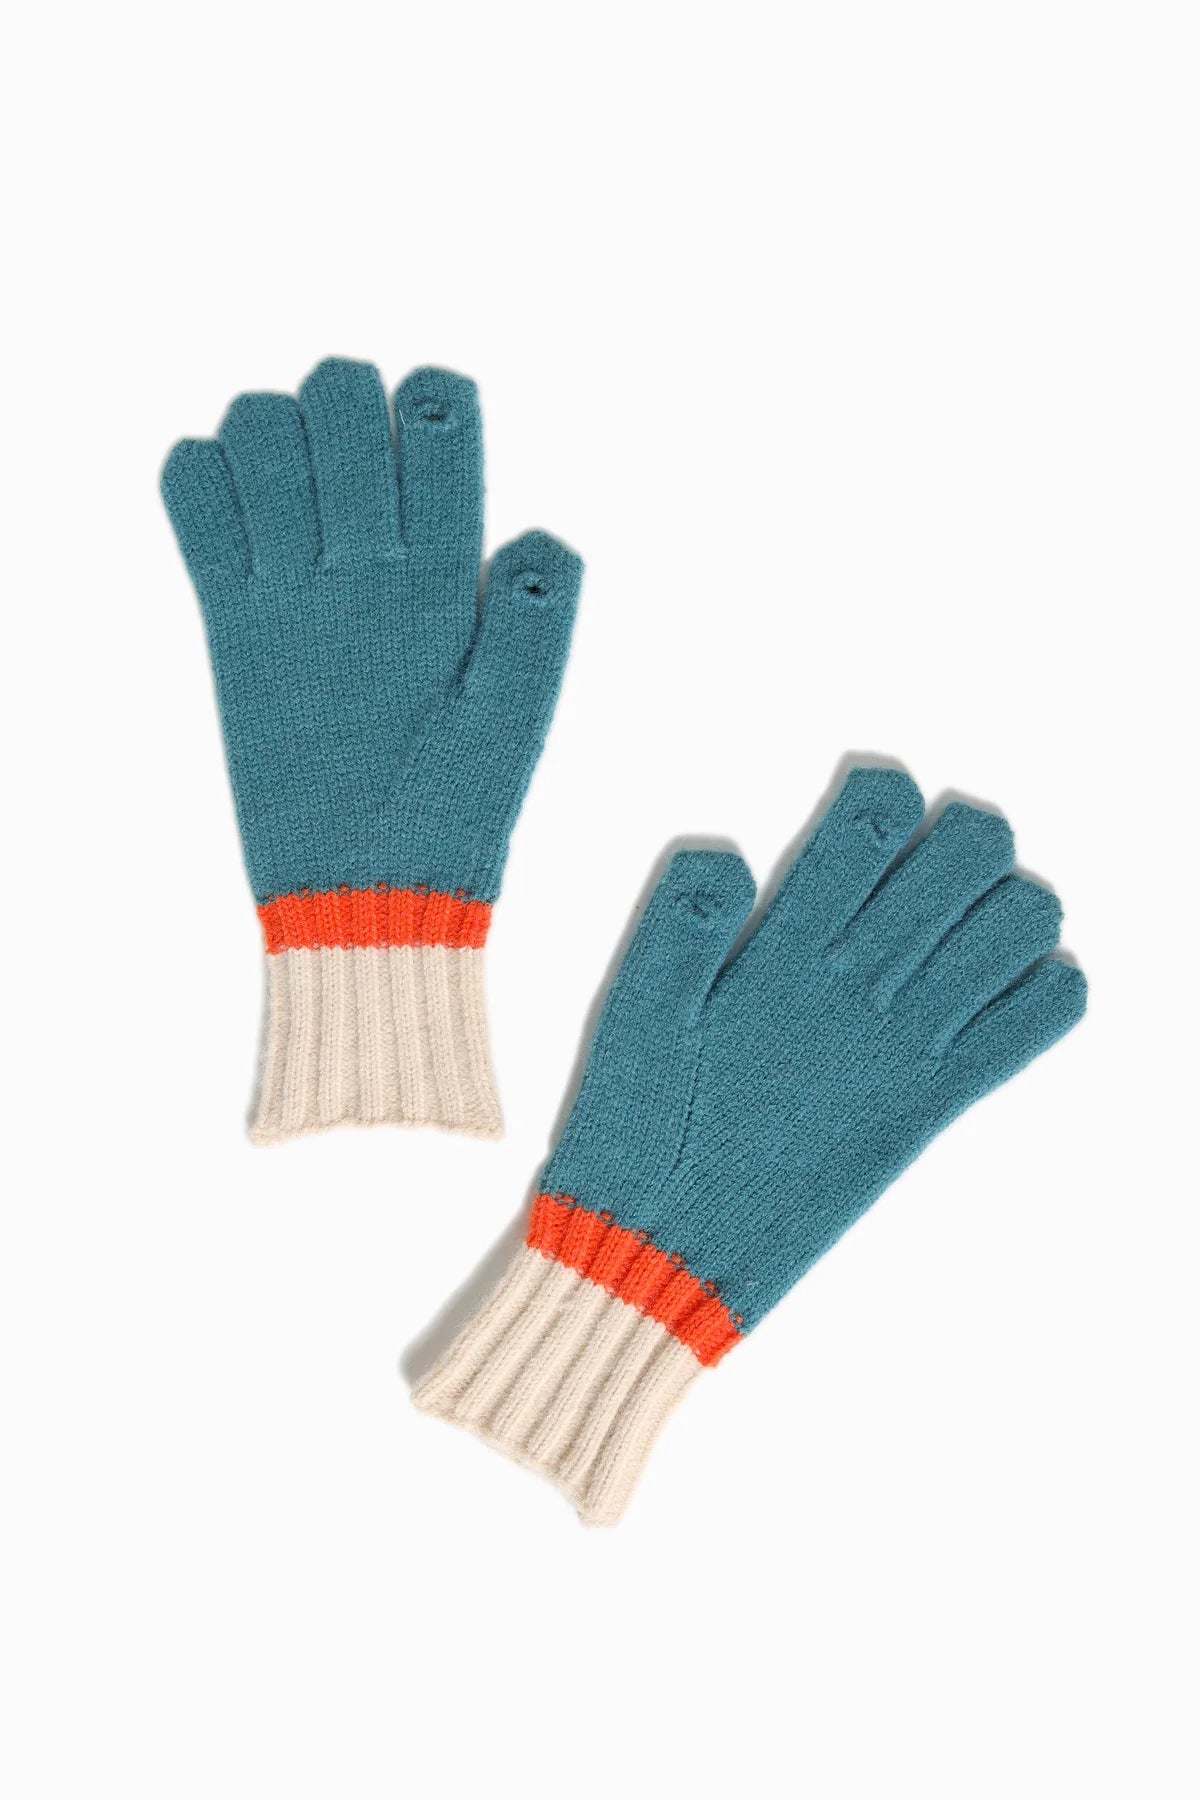 Tri-Color Gloves | Teal